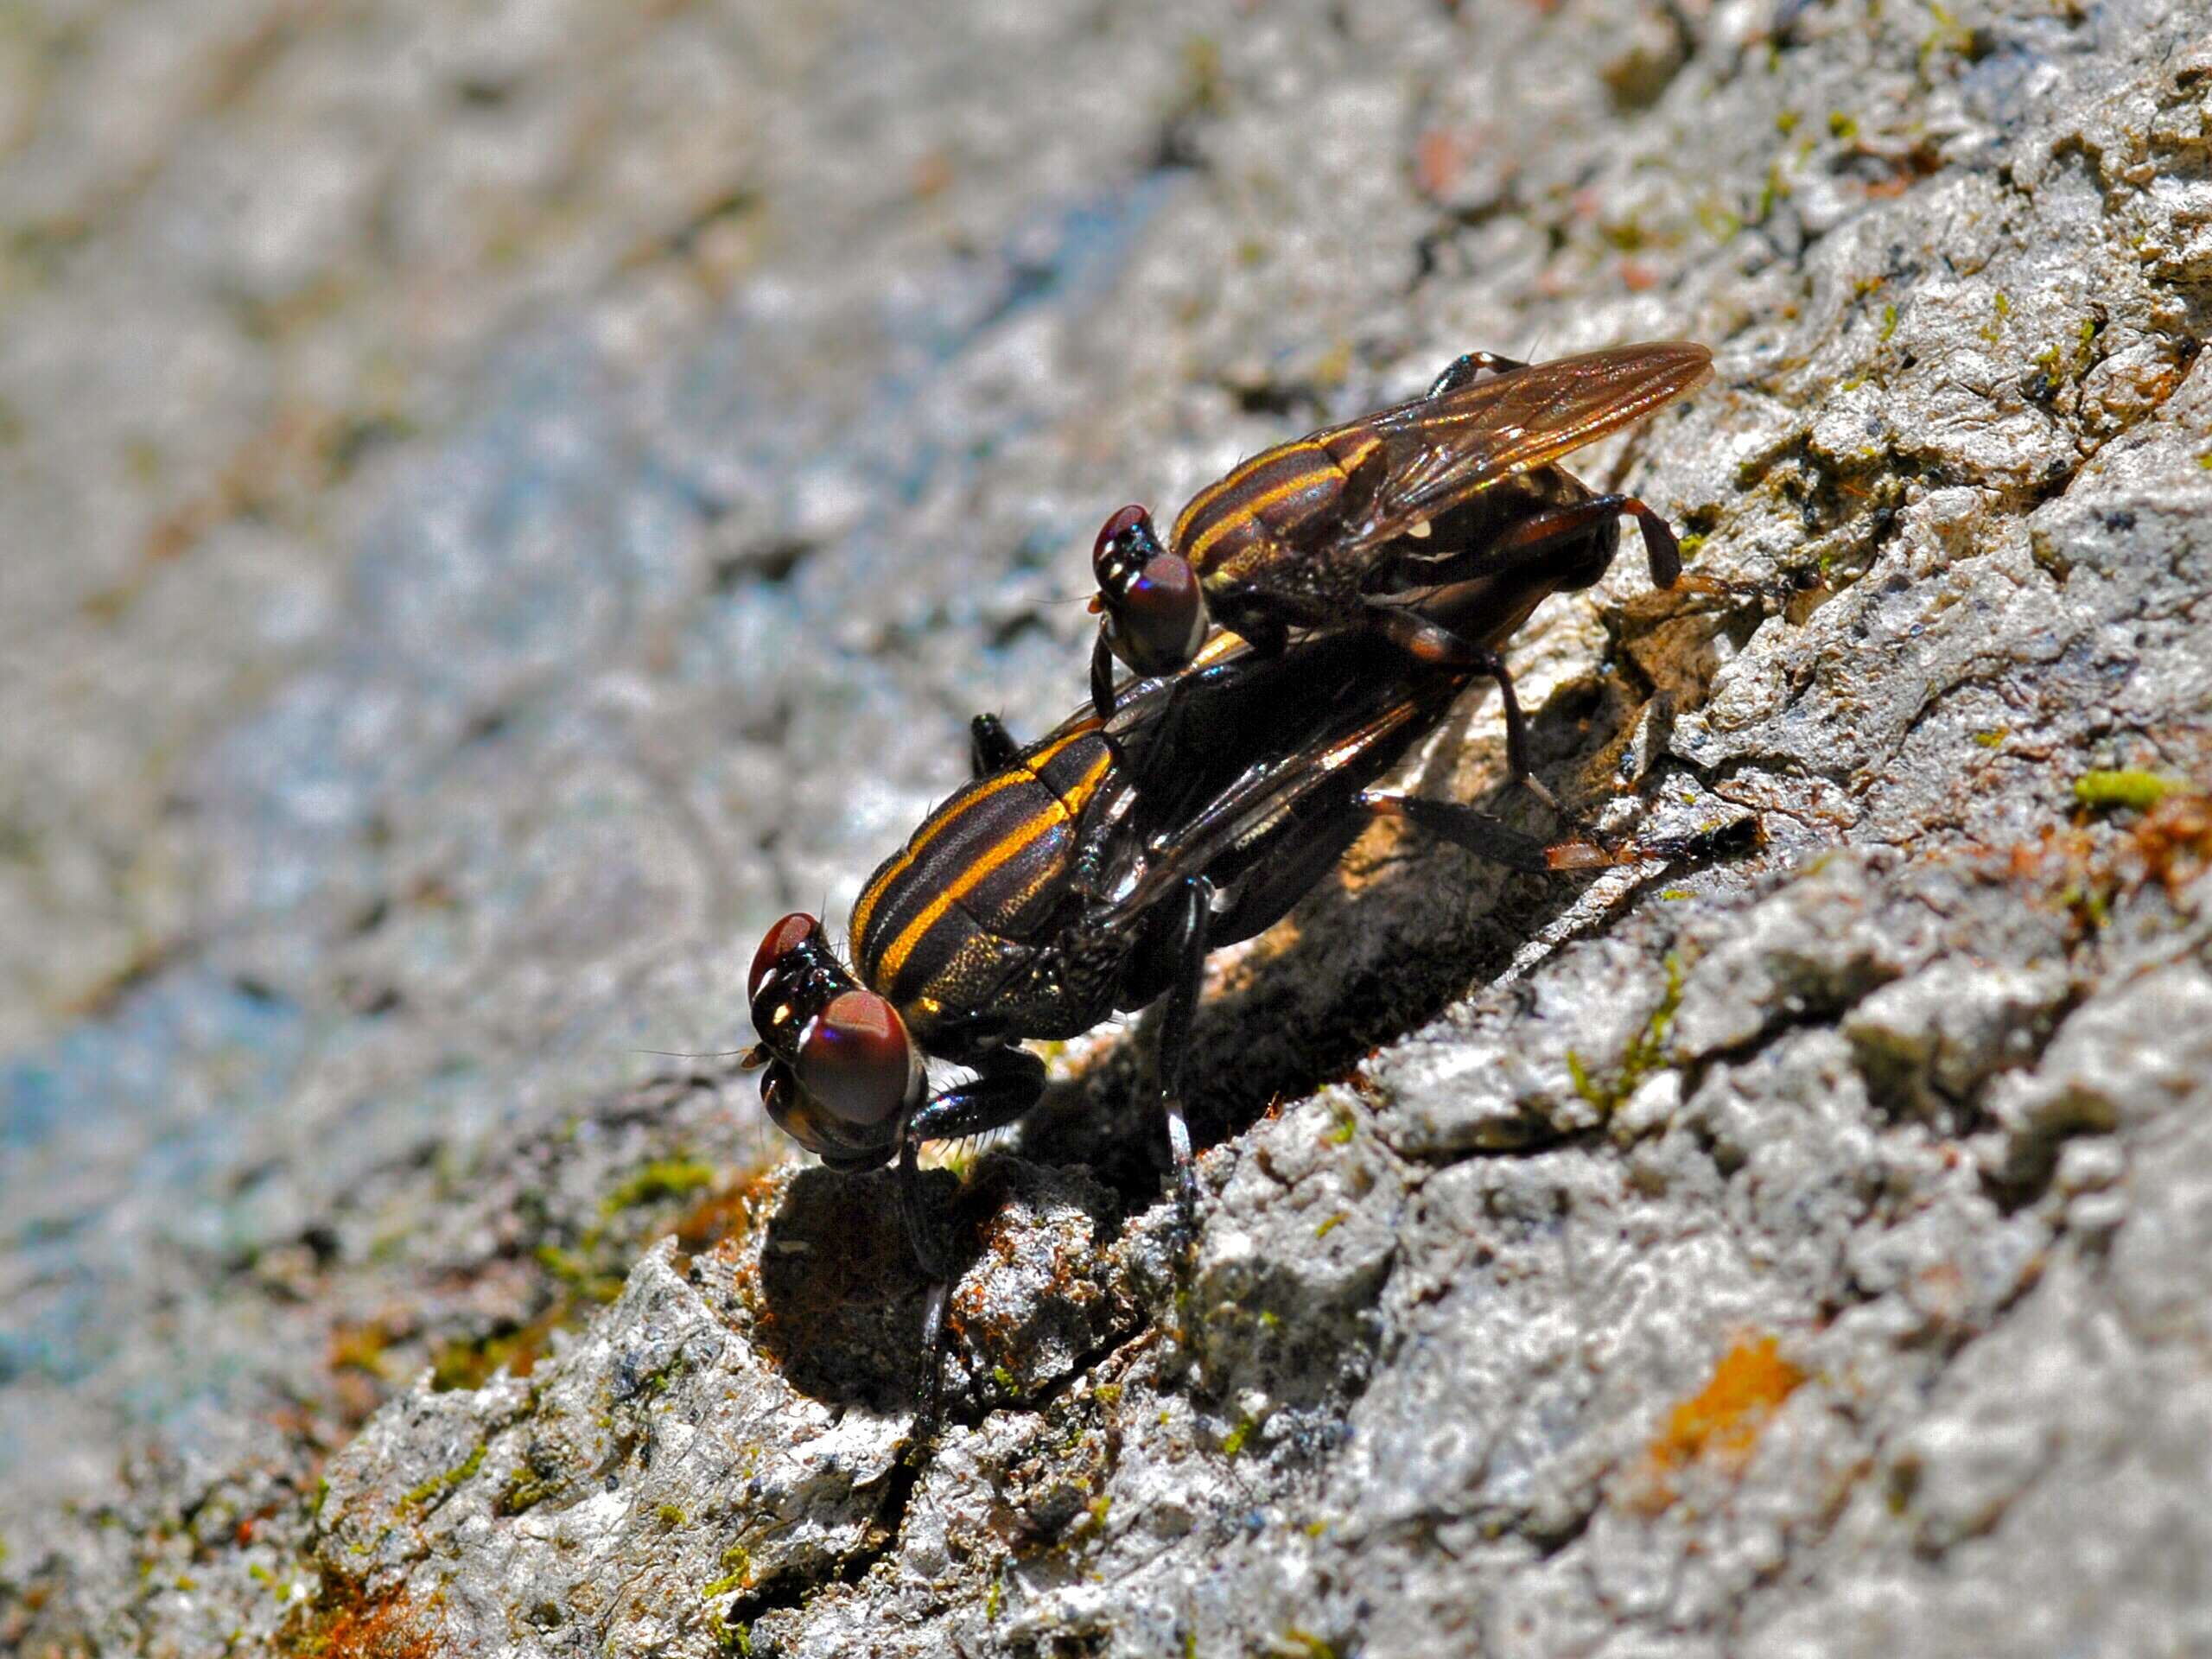 Image of ropalomerid flies